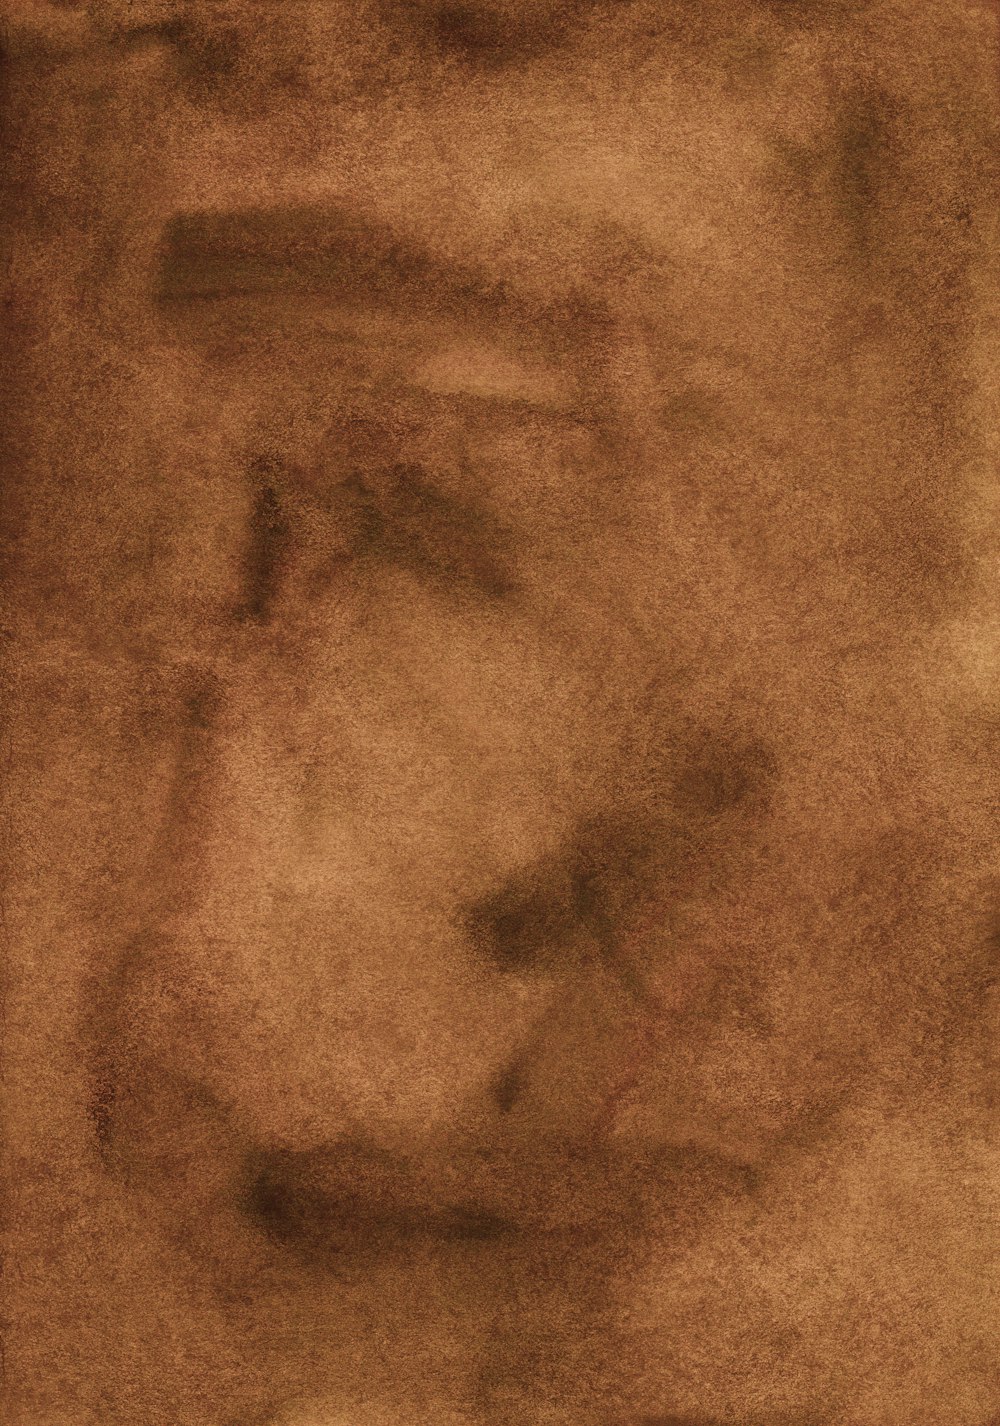 tessuto marrone in primo piano immagine